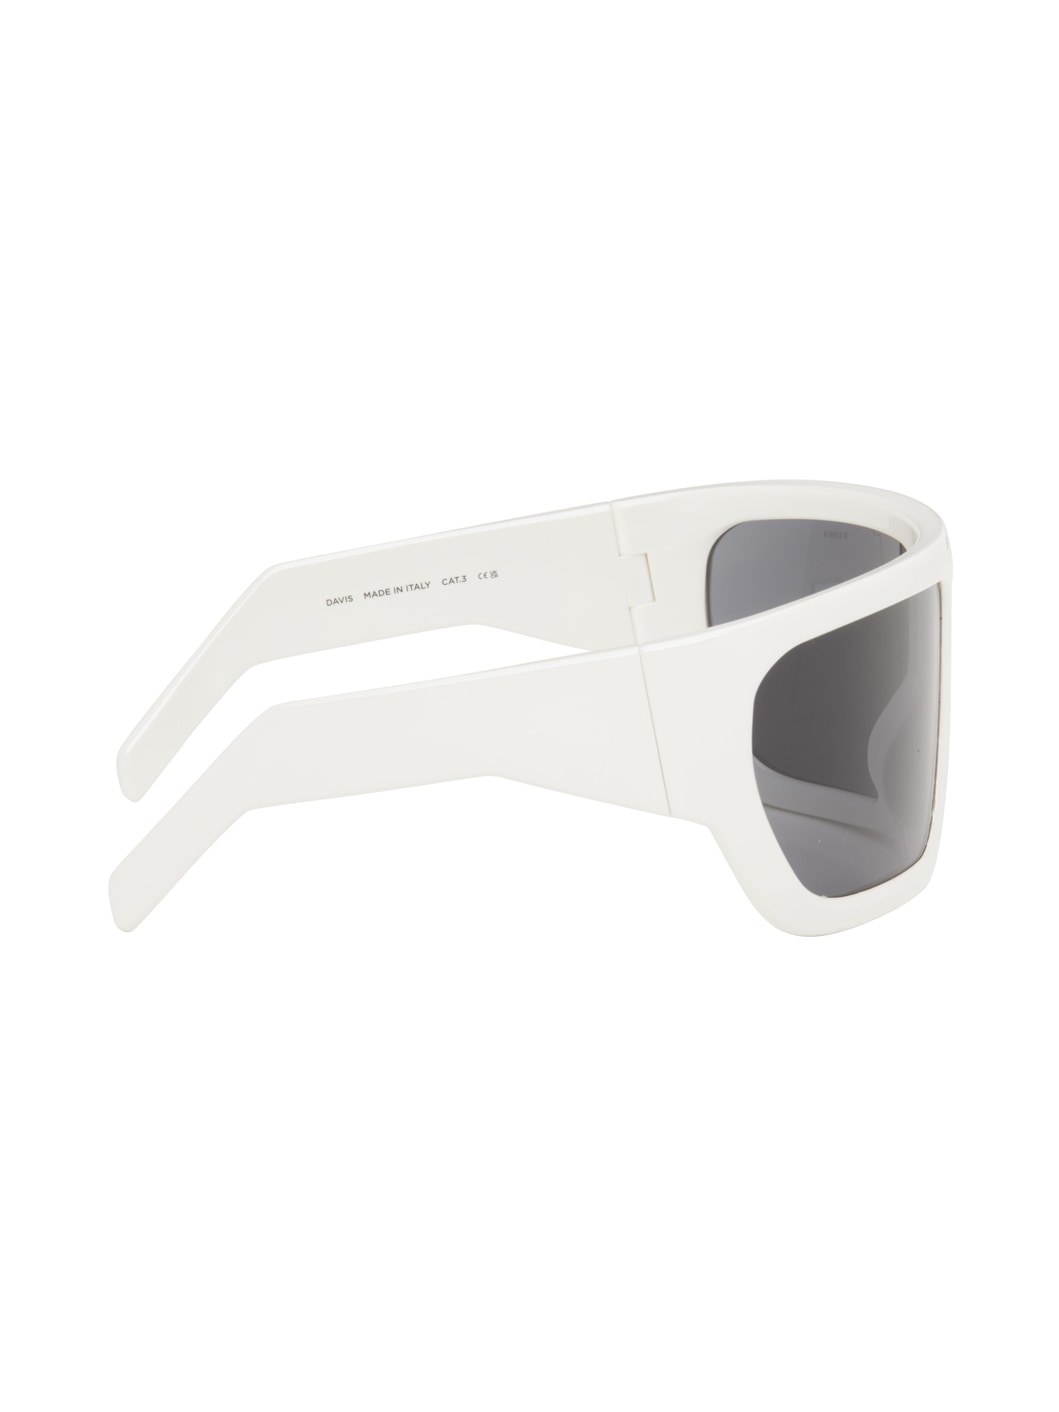 Off-White Davis Sunglasses - 2